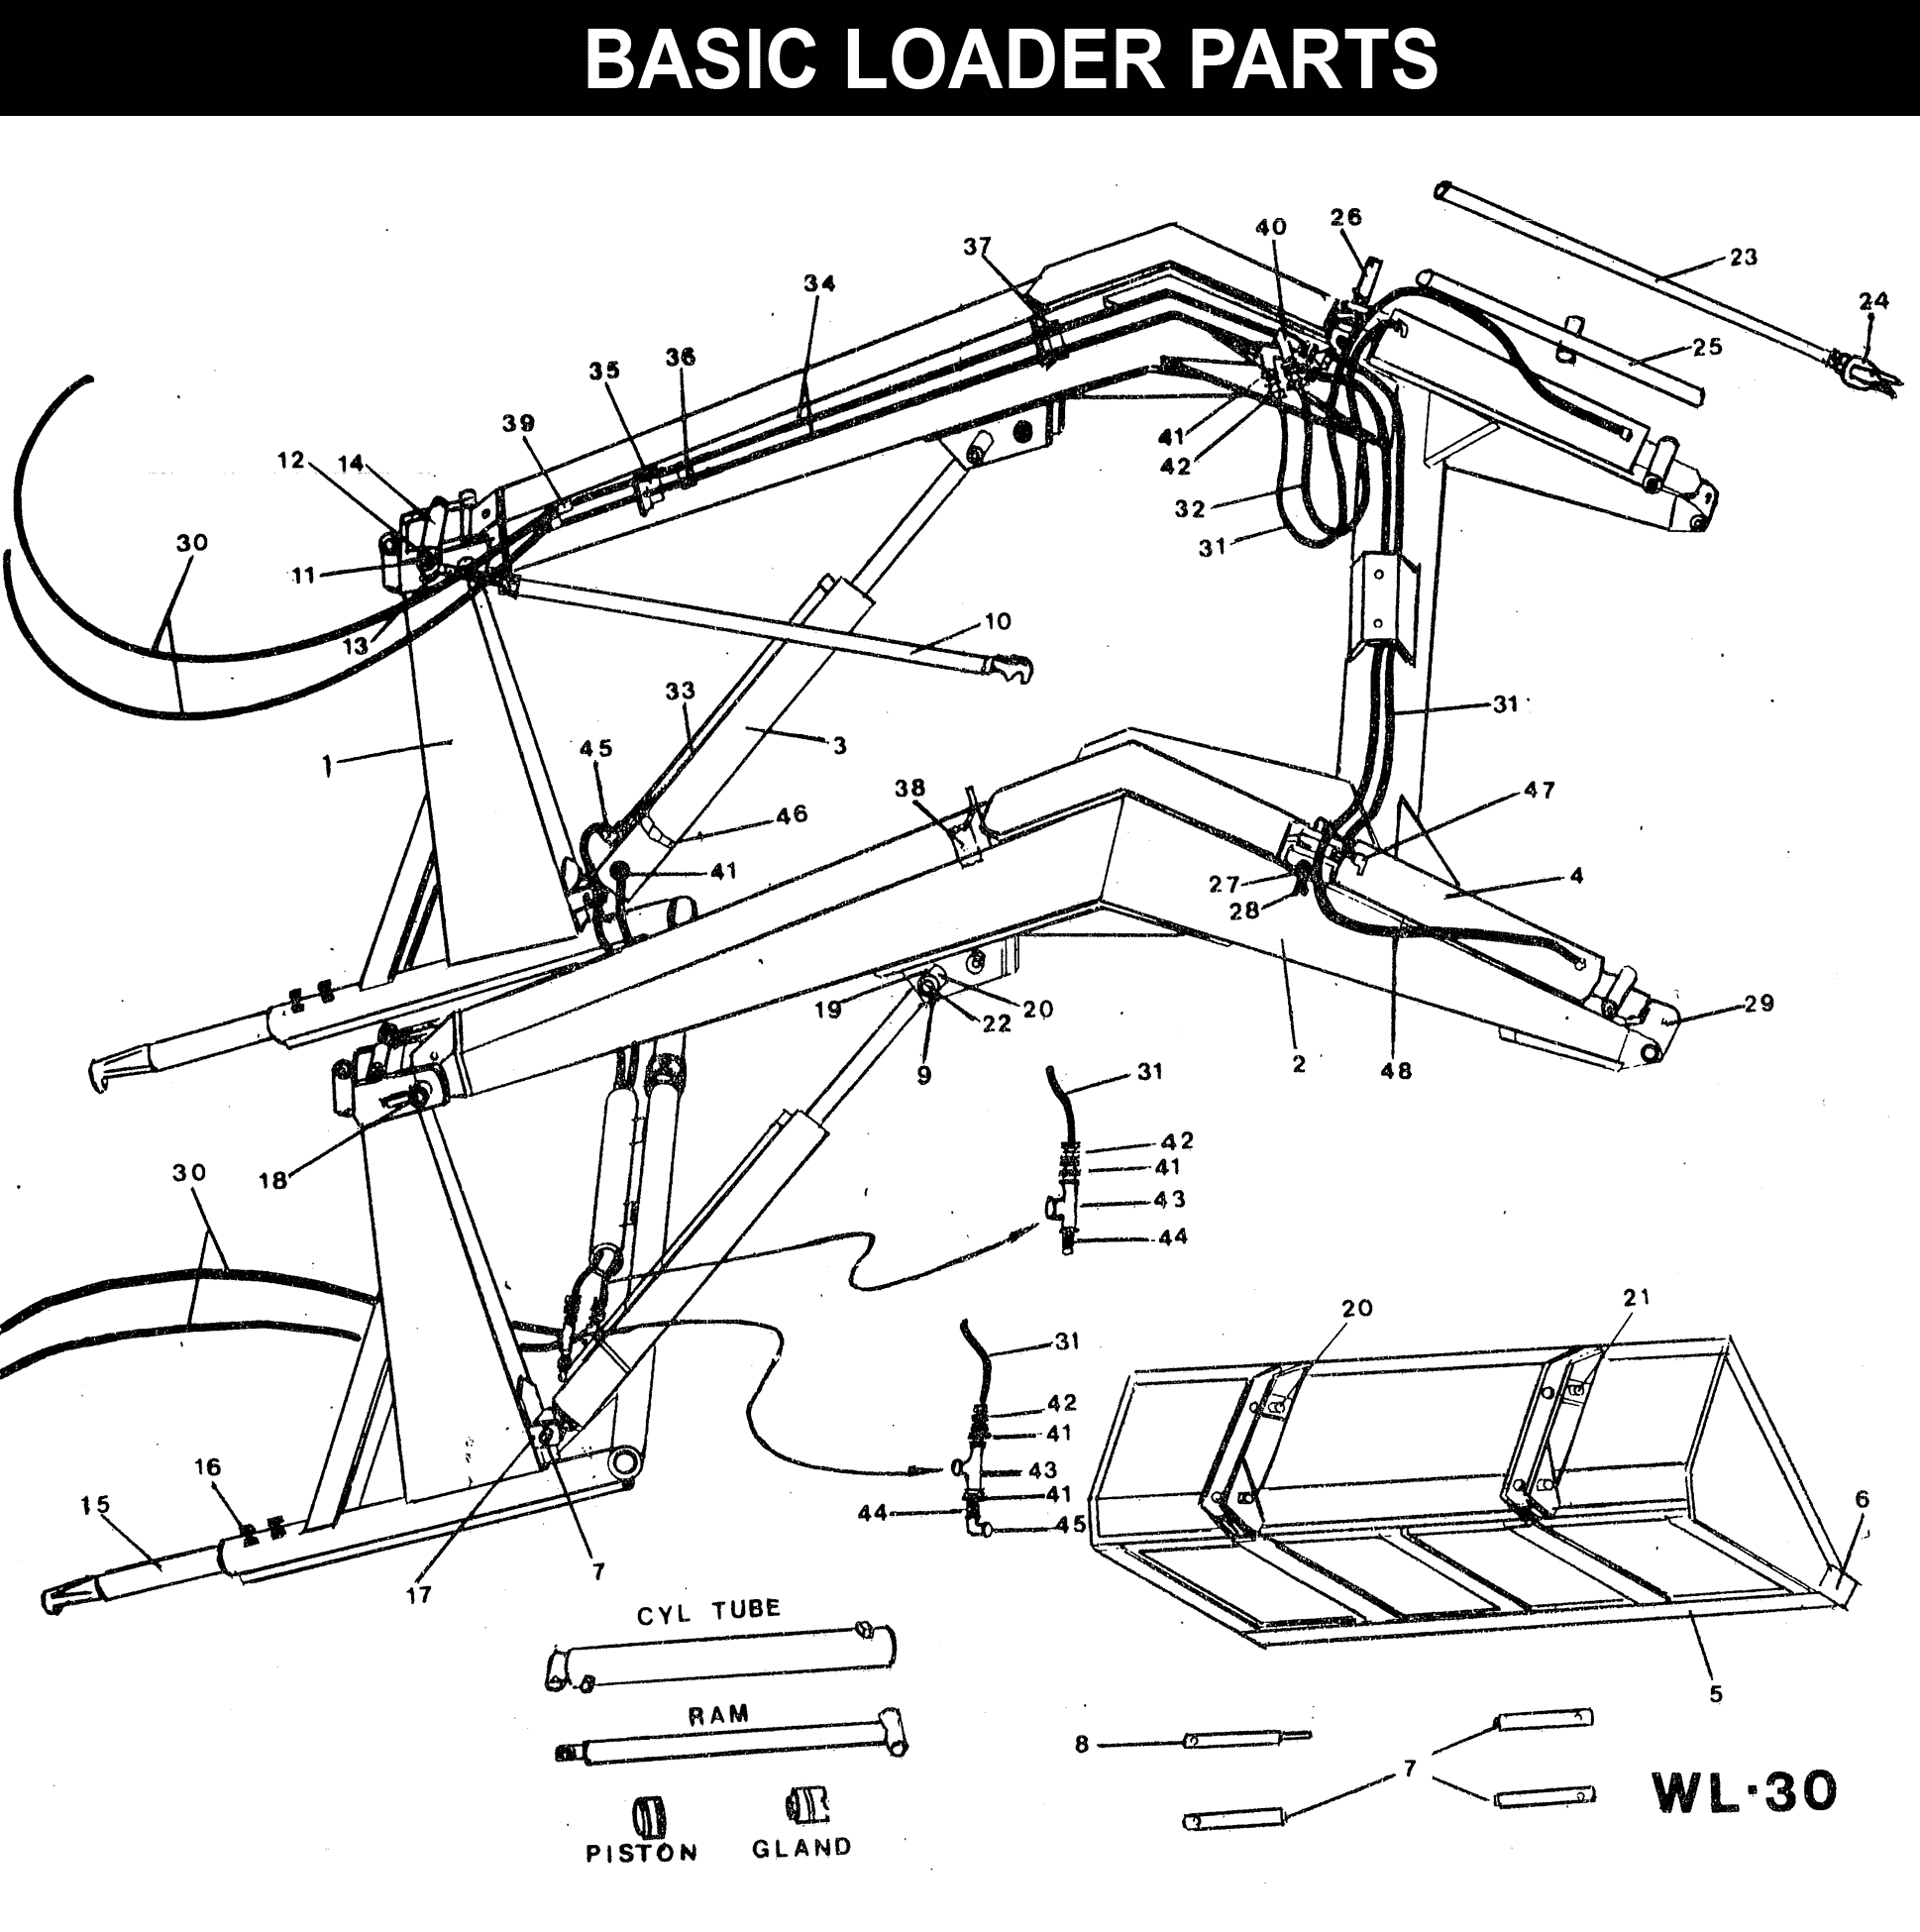 WL-30 Basic Loader Parts